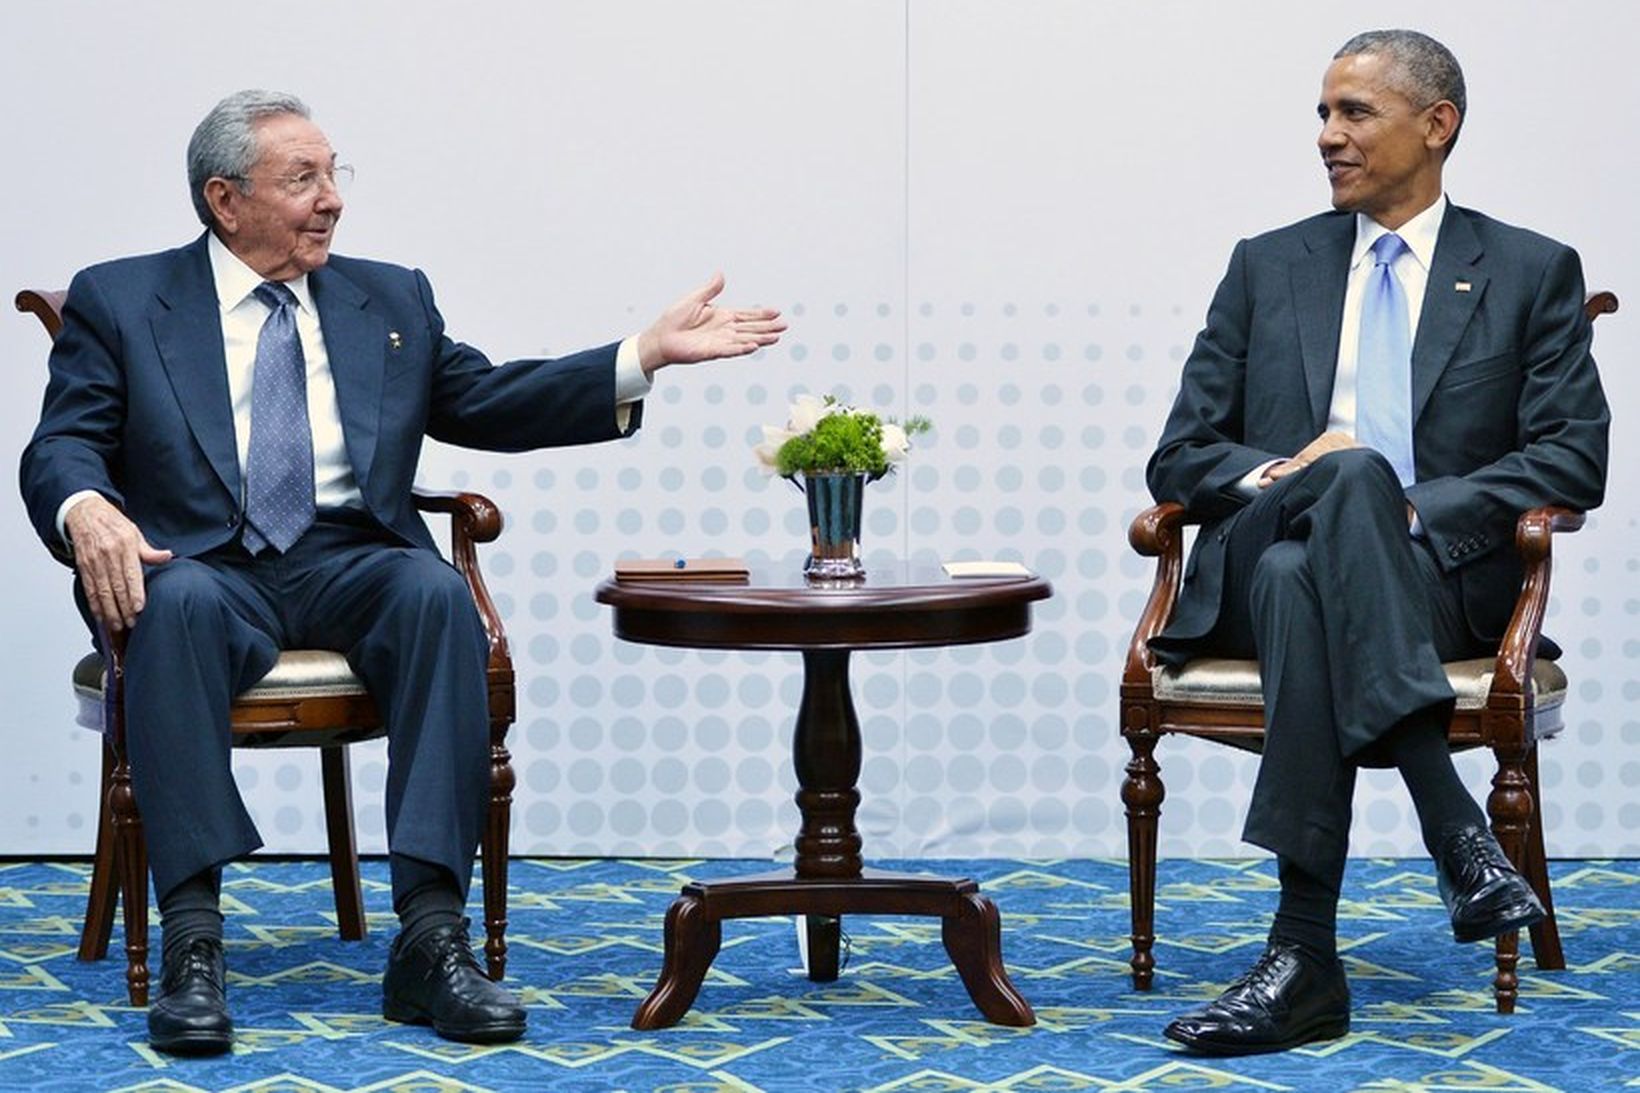 Raul Castro, forseti Kúbu, ræðir við Barack Obama Bandaríkjaforseta.